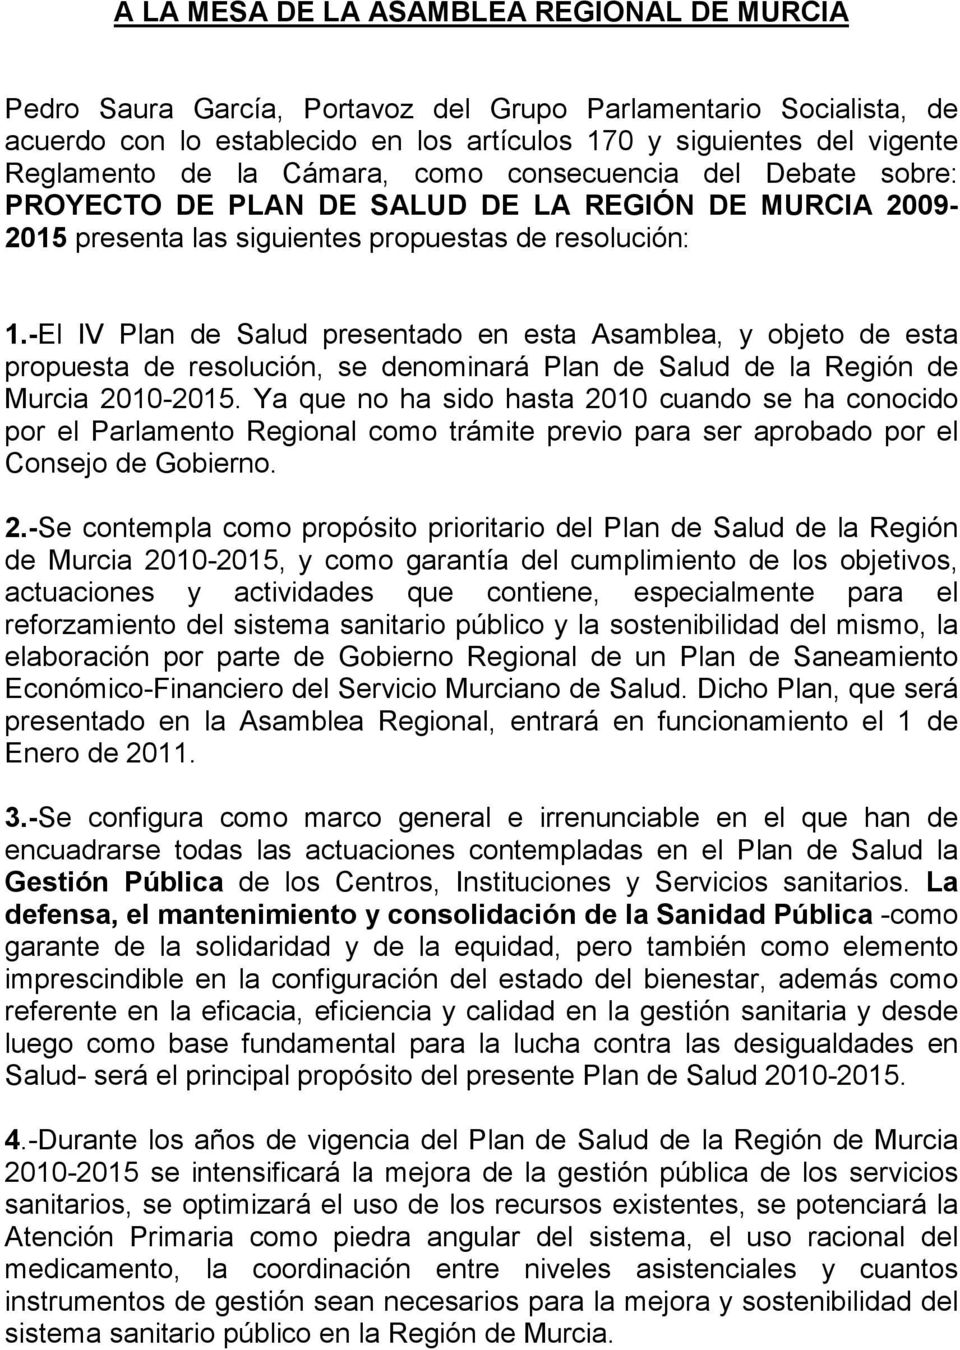 -El IV Plan de Salud presentado en esta Asamblea, y objeto de esta propuesta de resolución, se denominará Plan de Salud de la Región de Murcia 2010-2015.